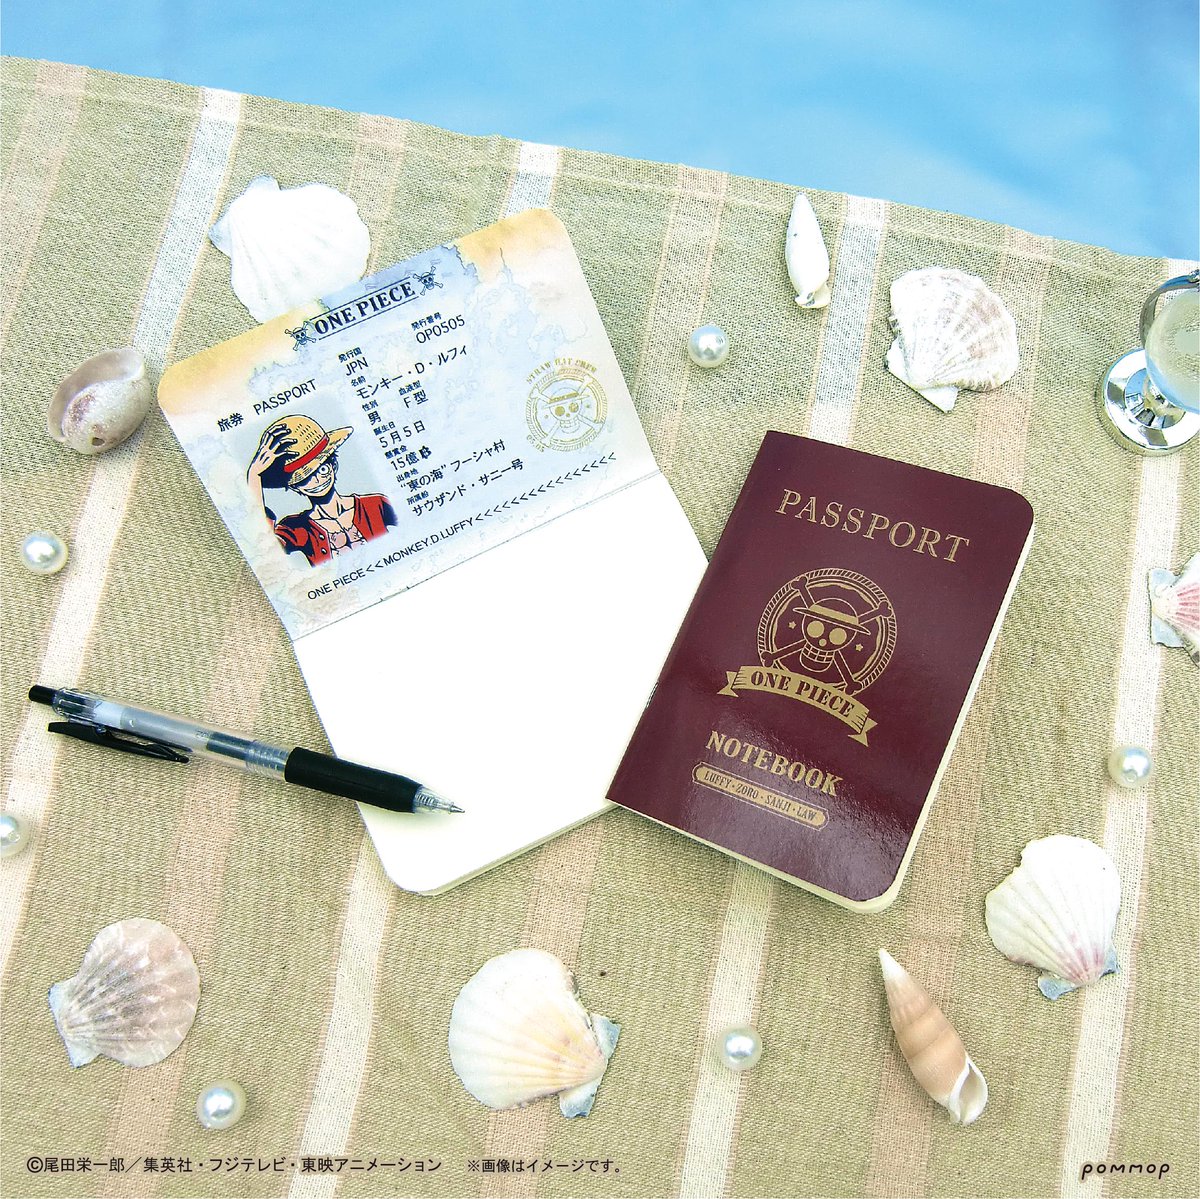 Pommop 商品 One Piece サマーコレクション 今回は パスポート風ノート をご紹介 名前の通りパスポートみたいなデザインのミニノート 便利なポケットサイズでたっぷり書ける48ページ 綴り 旅のメモにぴったりです 次回は箔押しミニ色紙